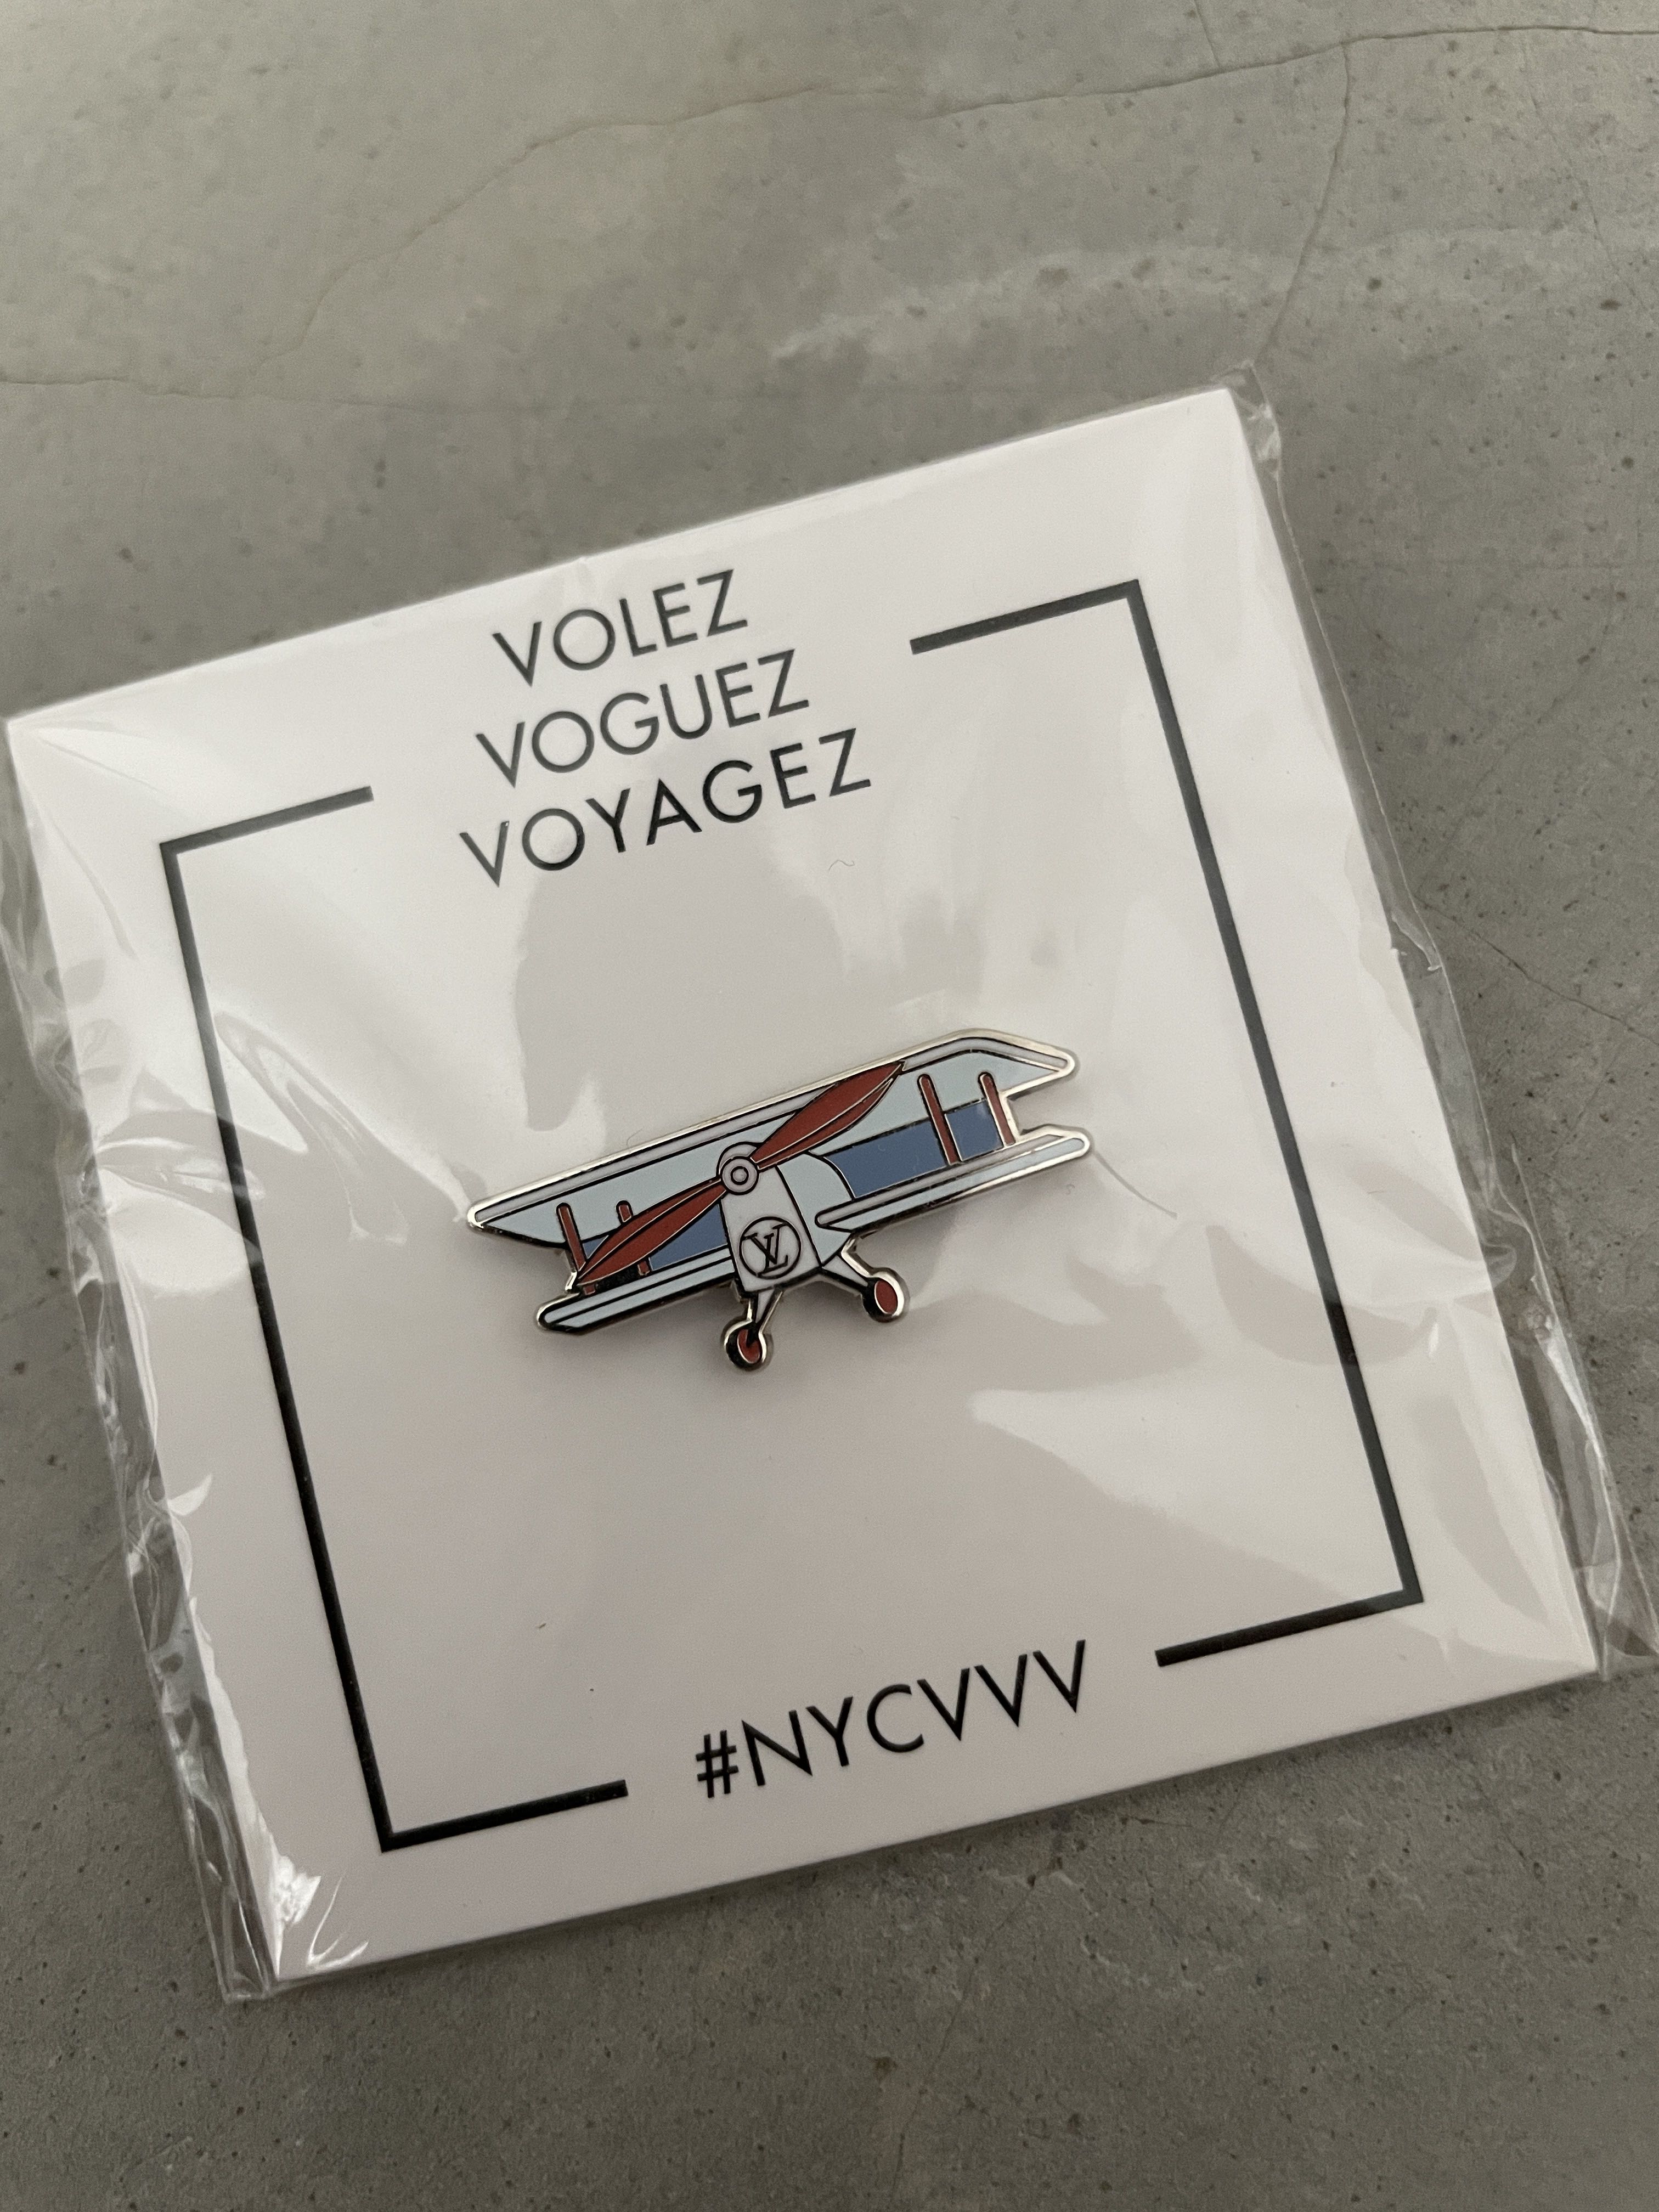 LOUIS VUITTON x Pintrill Airplane Pin Volez Vogez Voyagez Exhibit NYC